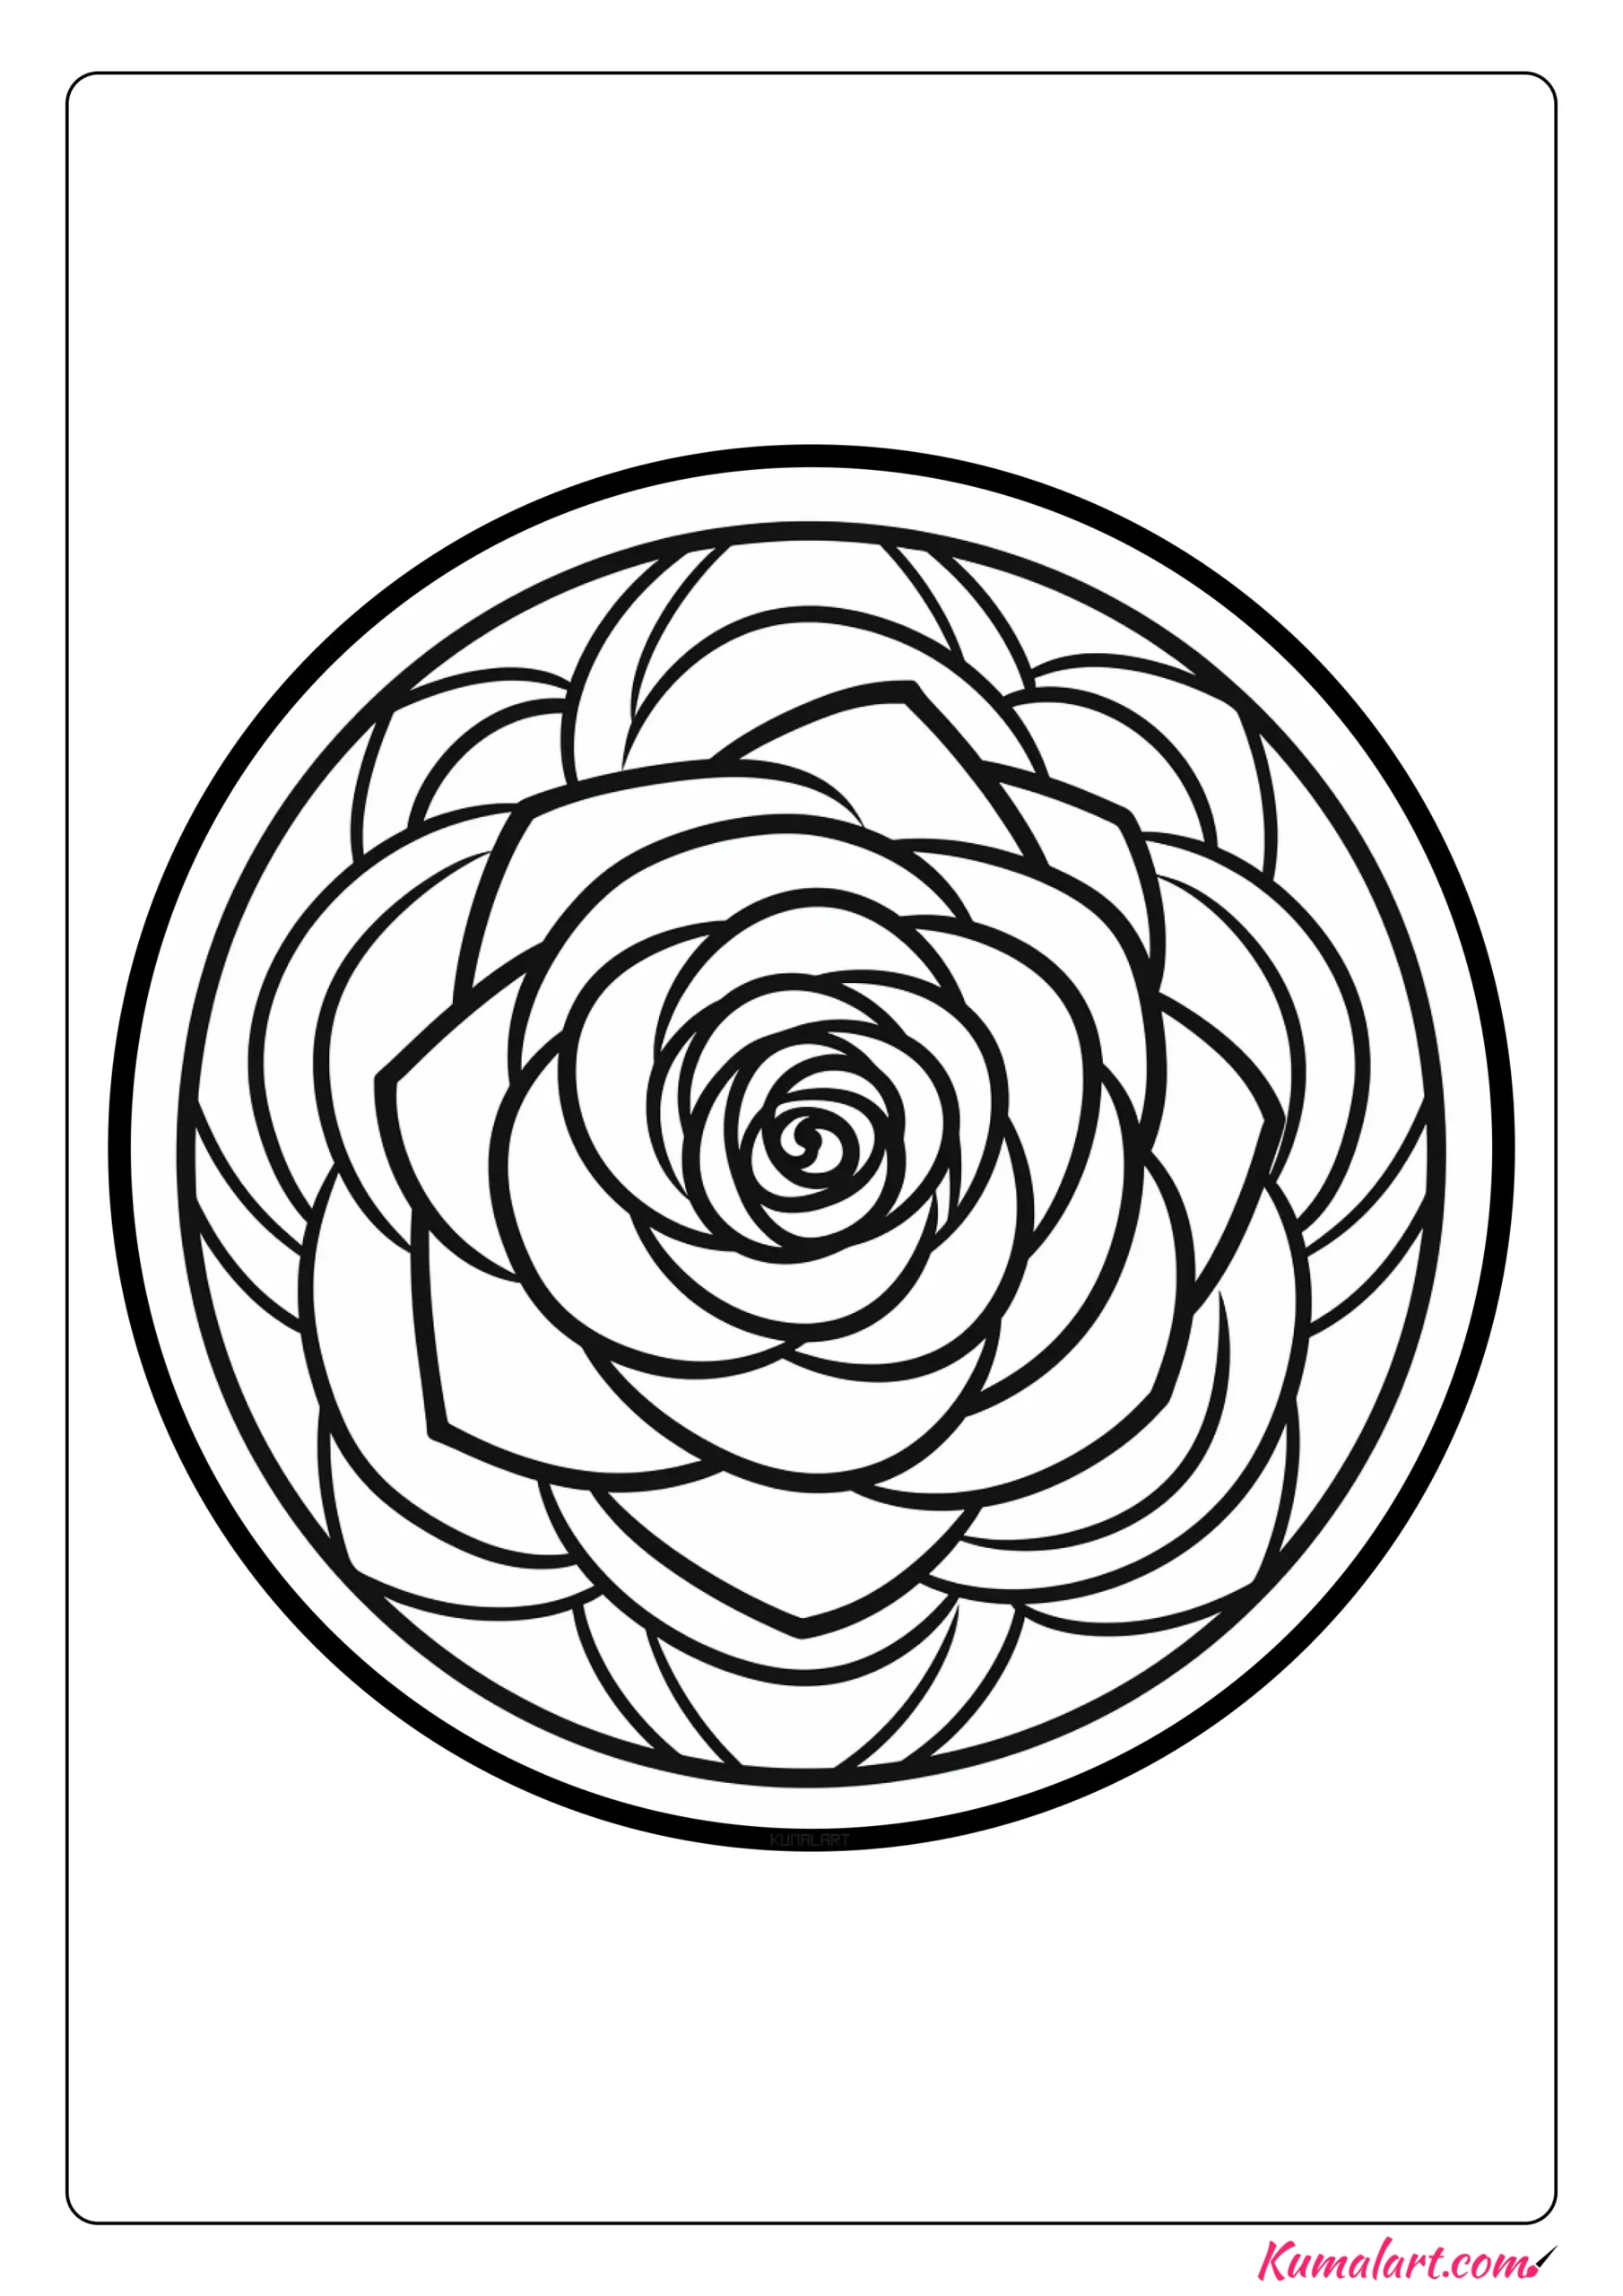 Abstract Rose Mandala Coloring Page